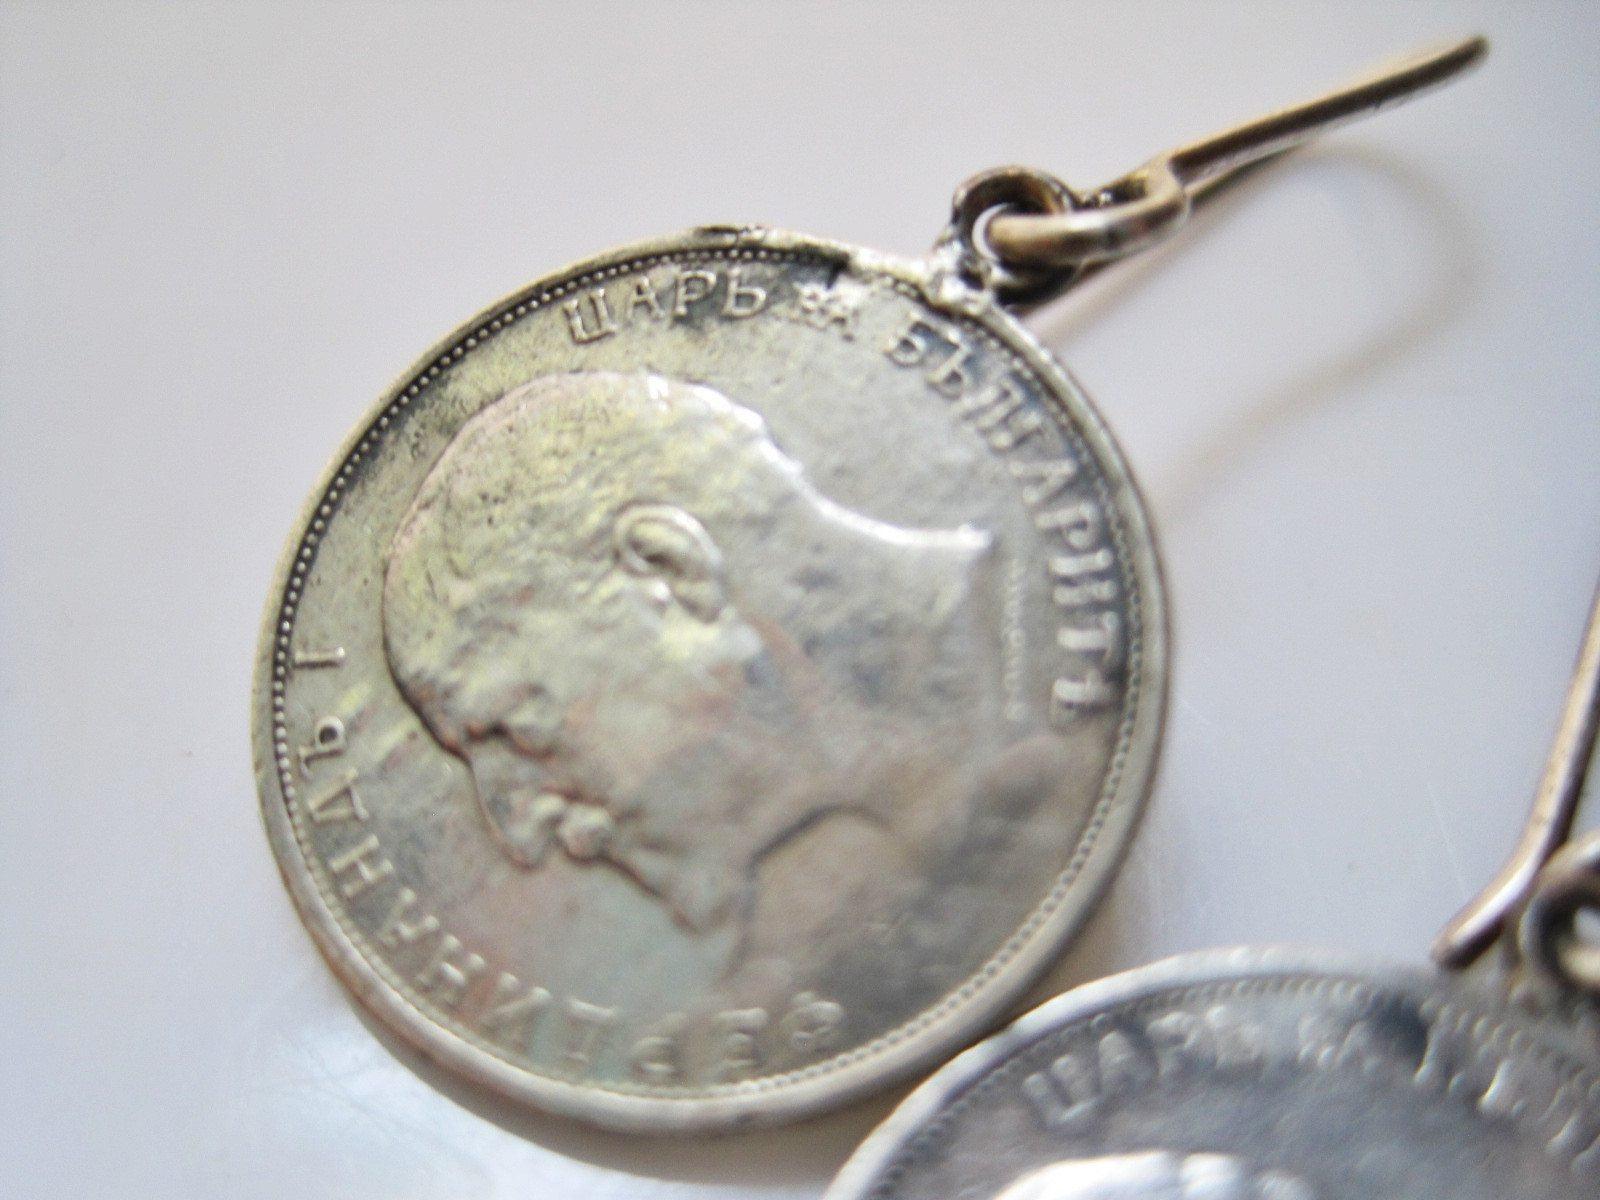 50 Stotinki silver coin